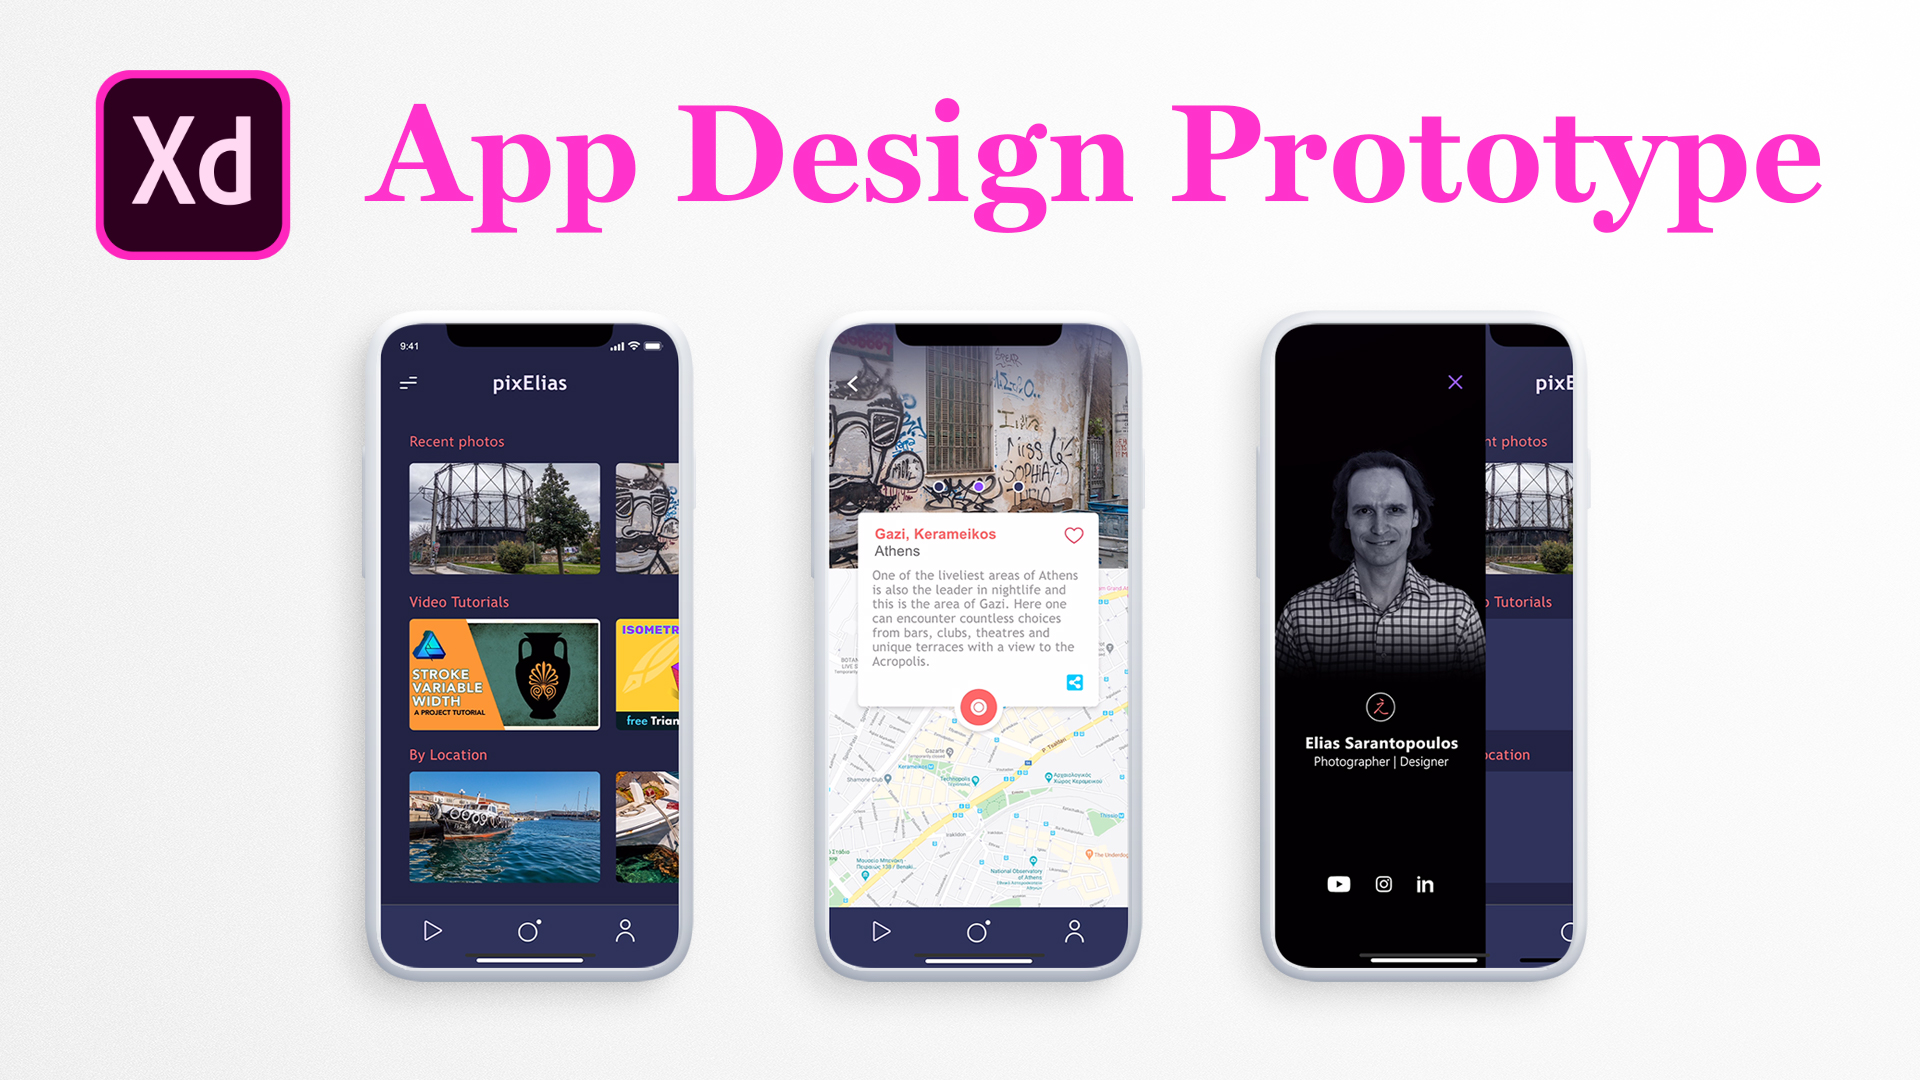 Adobe XD App Design Prototype